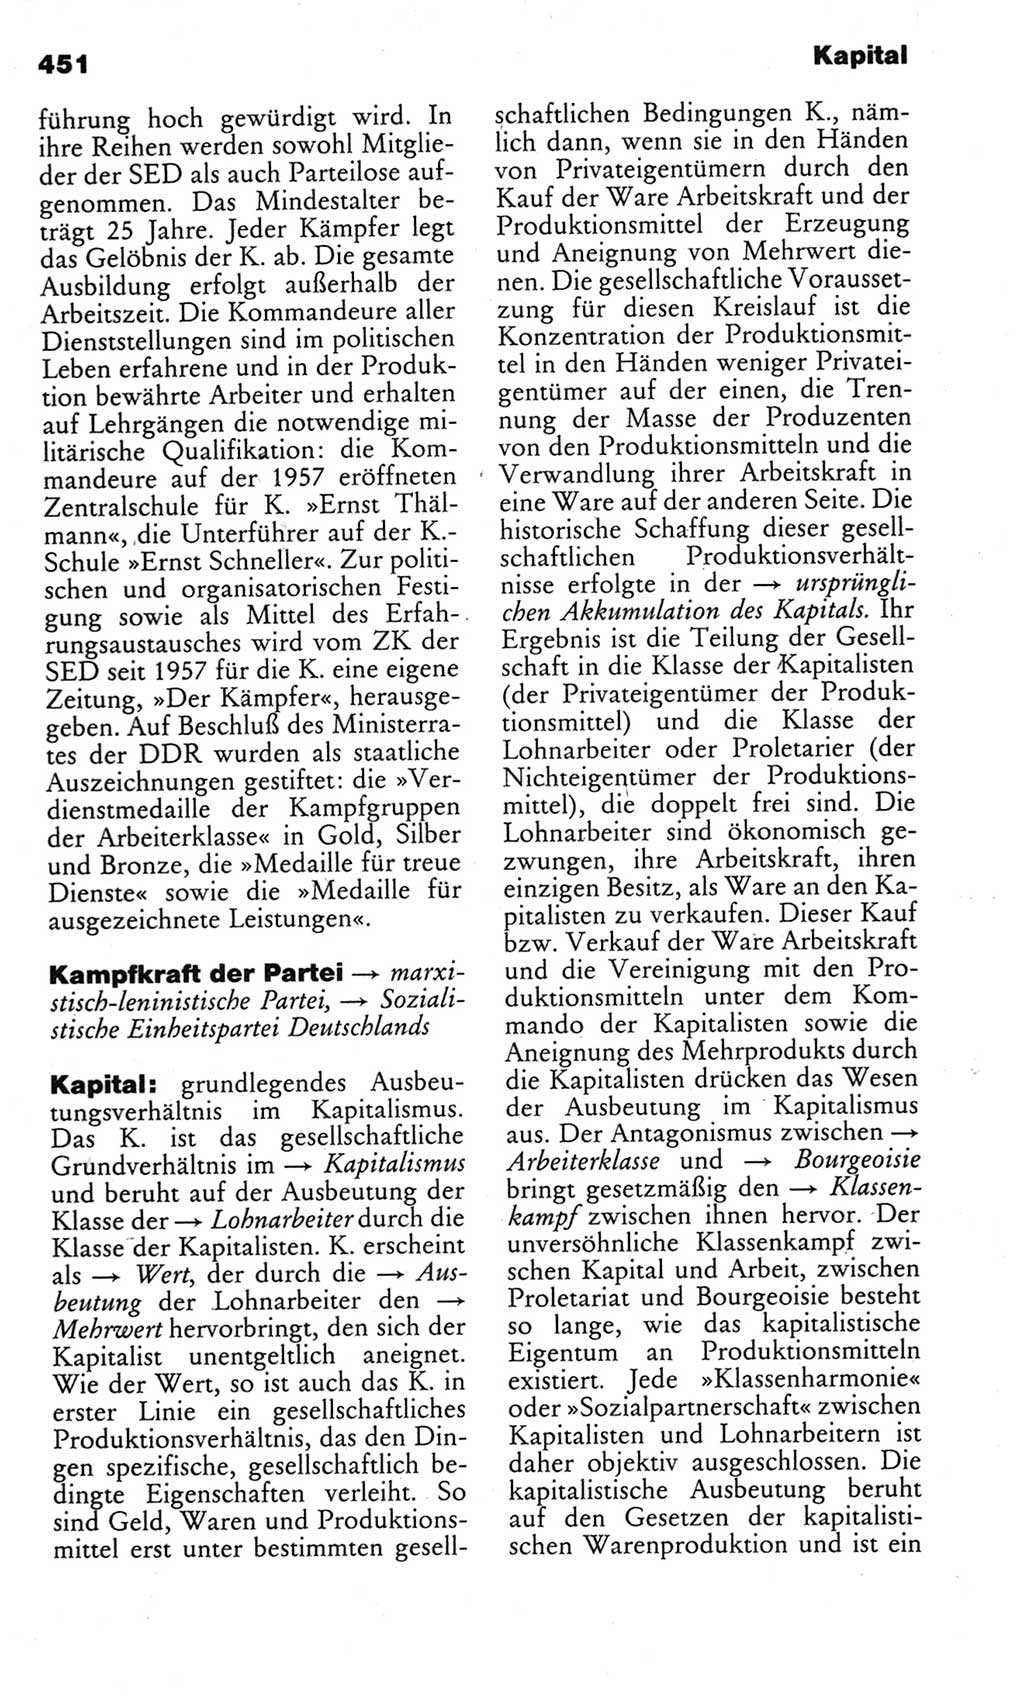 Kleines politisches Wörterbuch [Deutsche Demokratische Republik (DDR)] 1983, Seite 451 (Kl. pol. Wb. DDR 1983, S. 451)